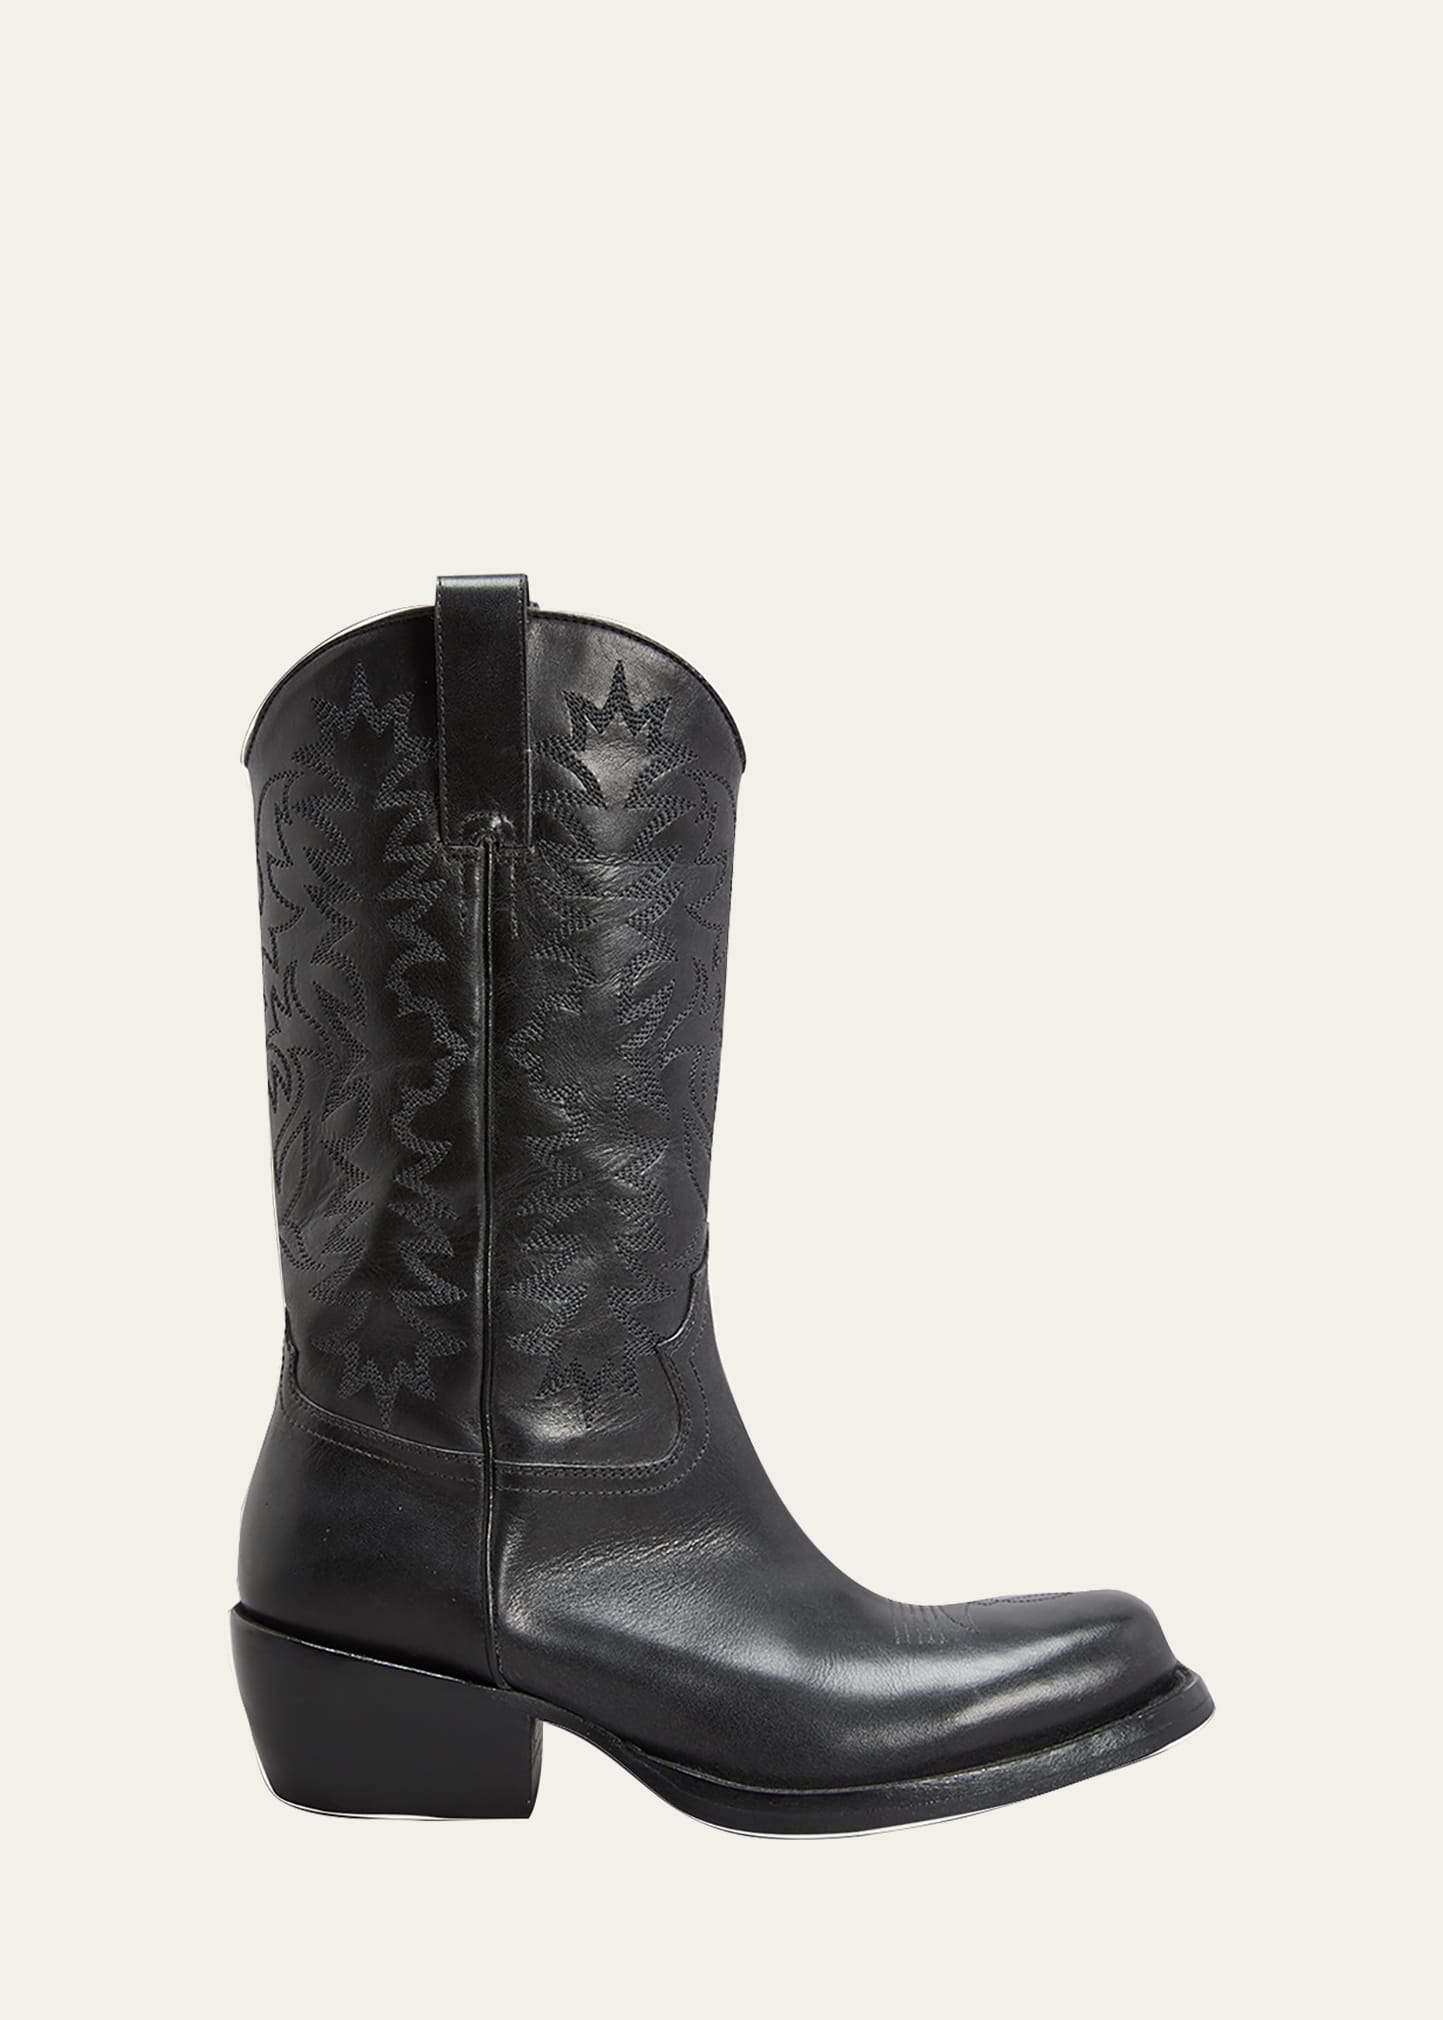 Dries Van Noten Men's Leather Western Boots In Black | ModeSens